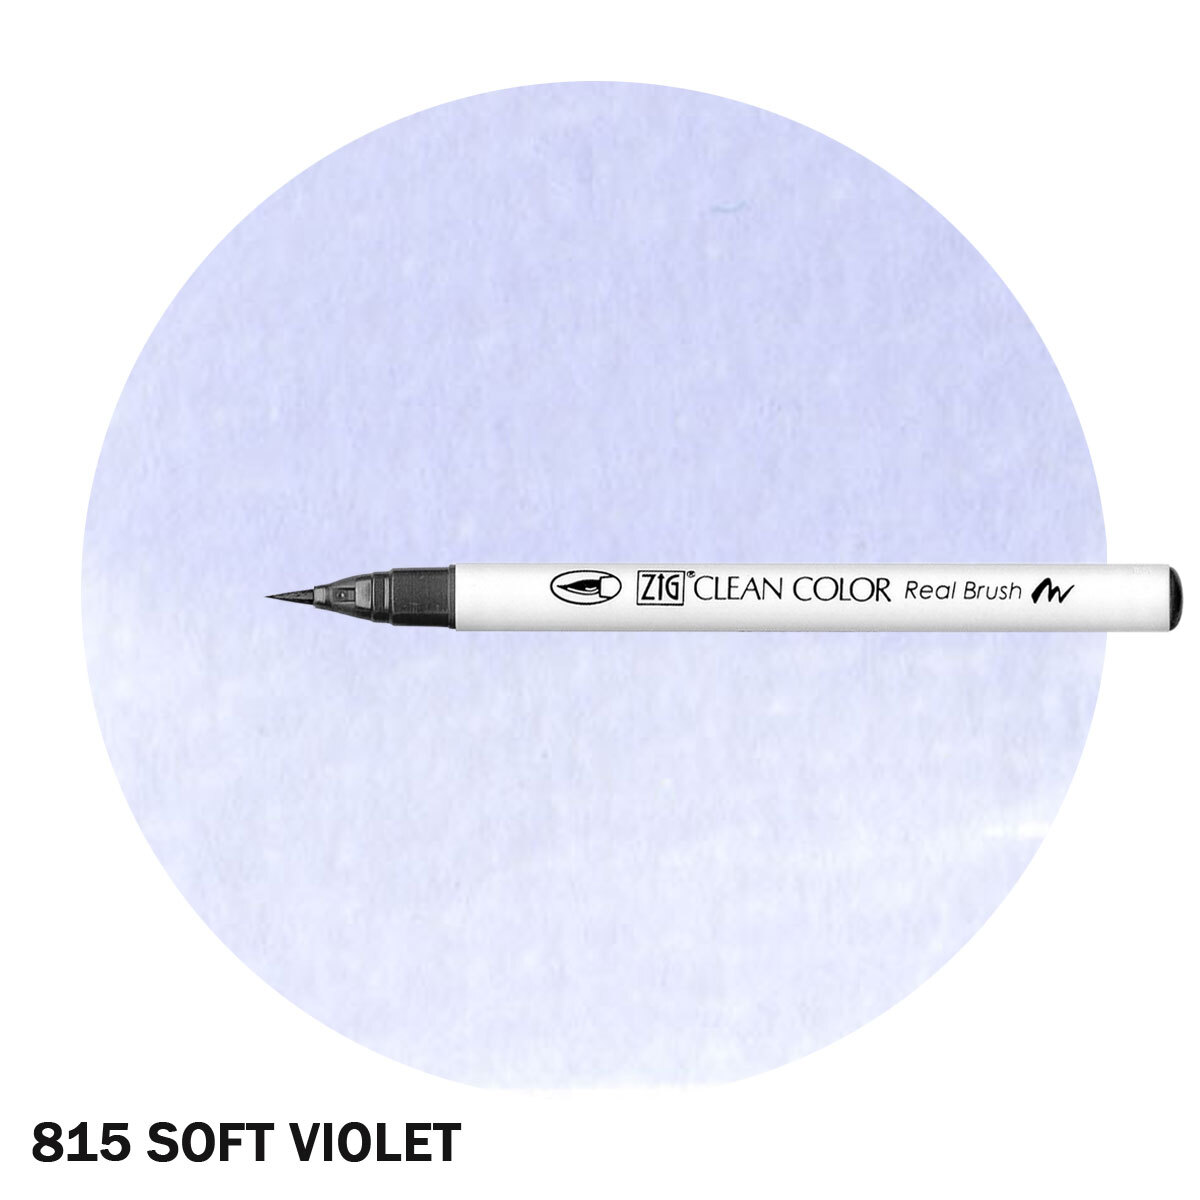 ZIG Clean Color Real Brush Marker Soft Violet